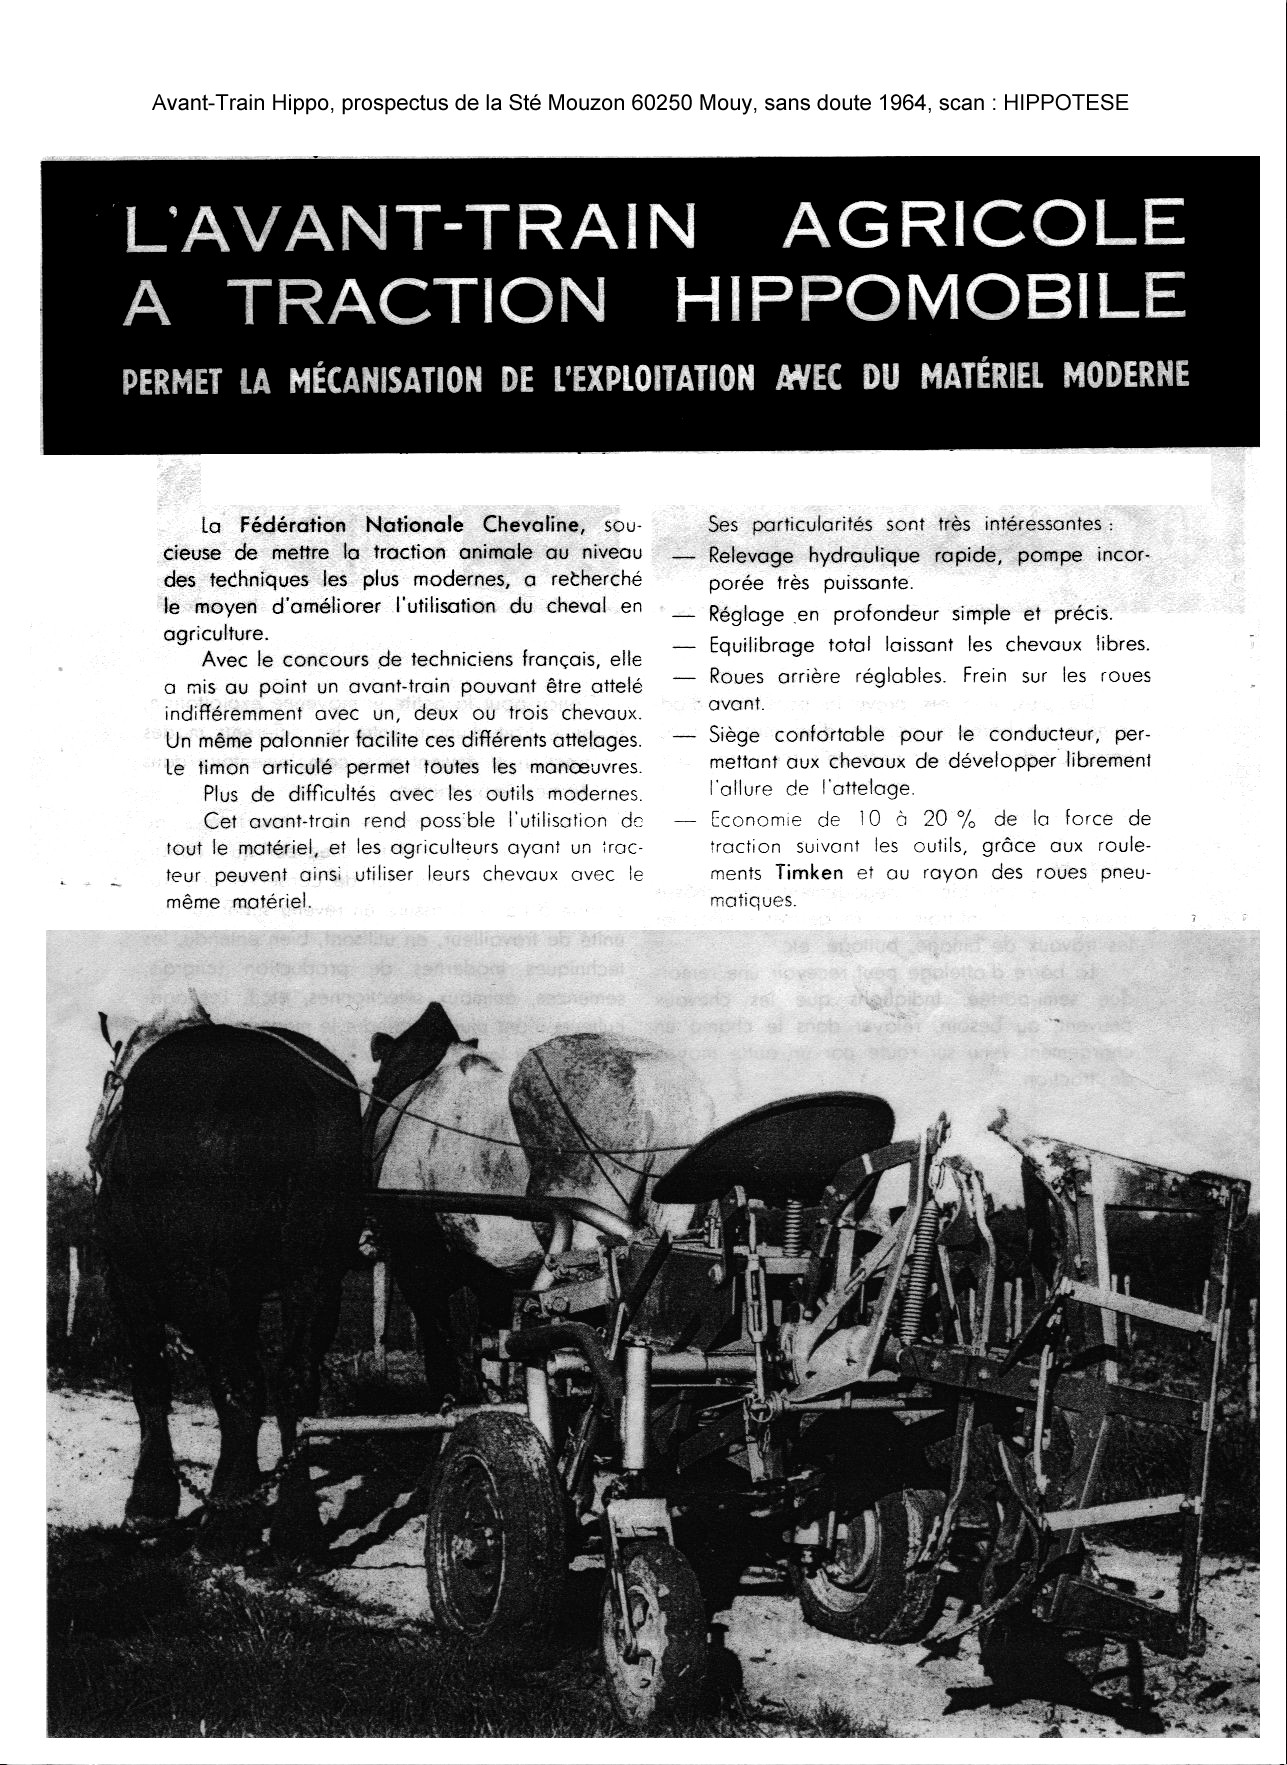 pneus pour attelage hippomobile de chevaux